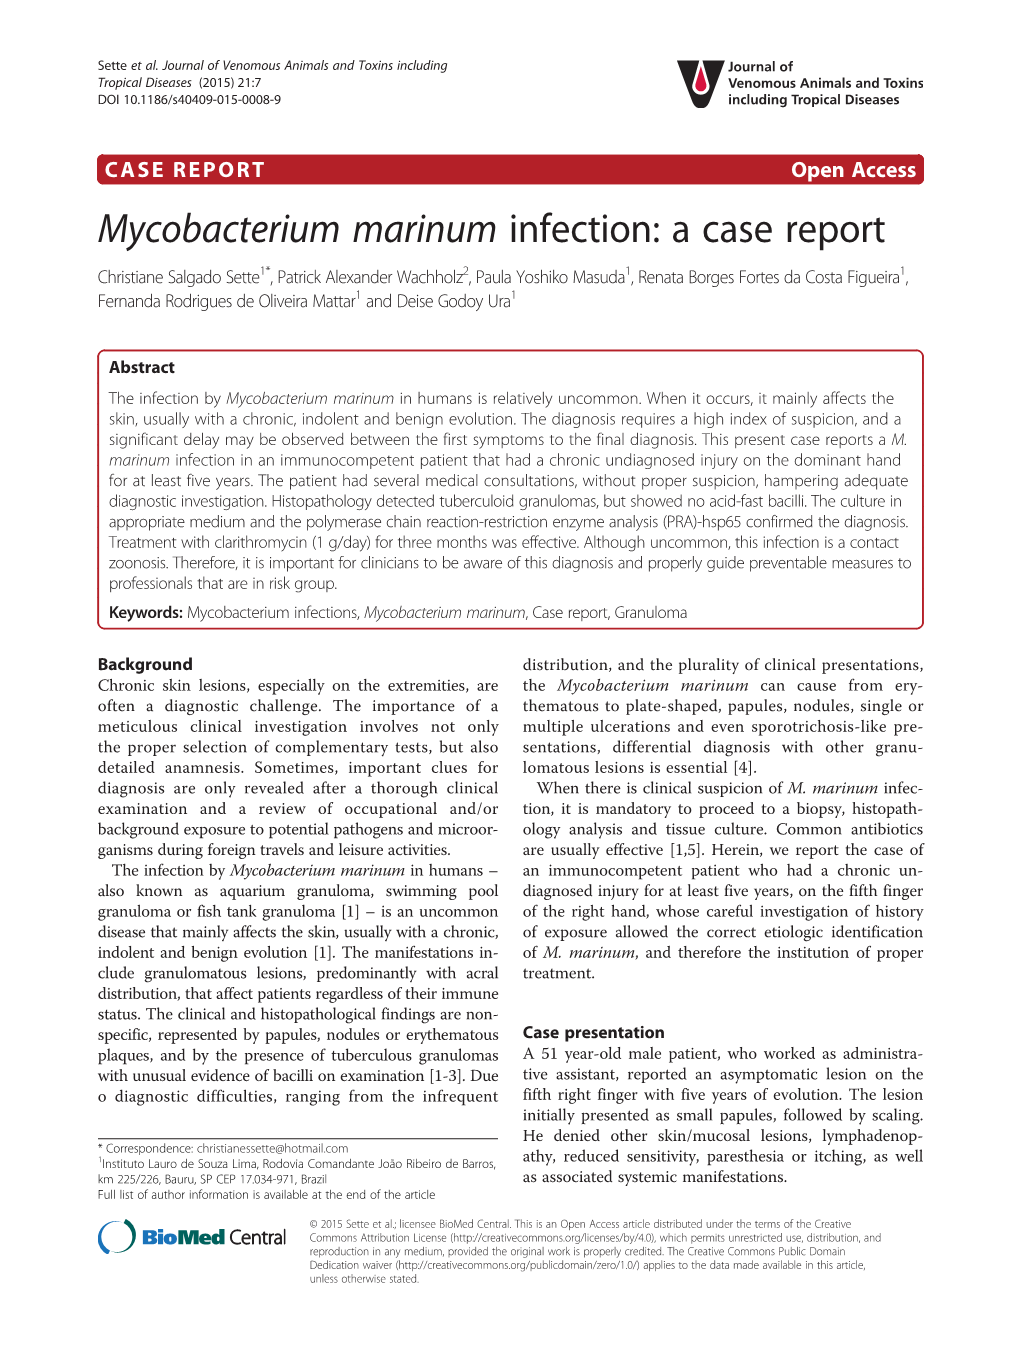 Mycobacterium Marinum Infection